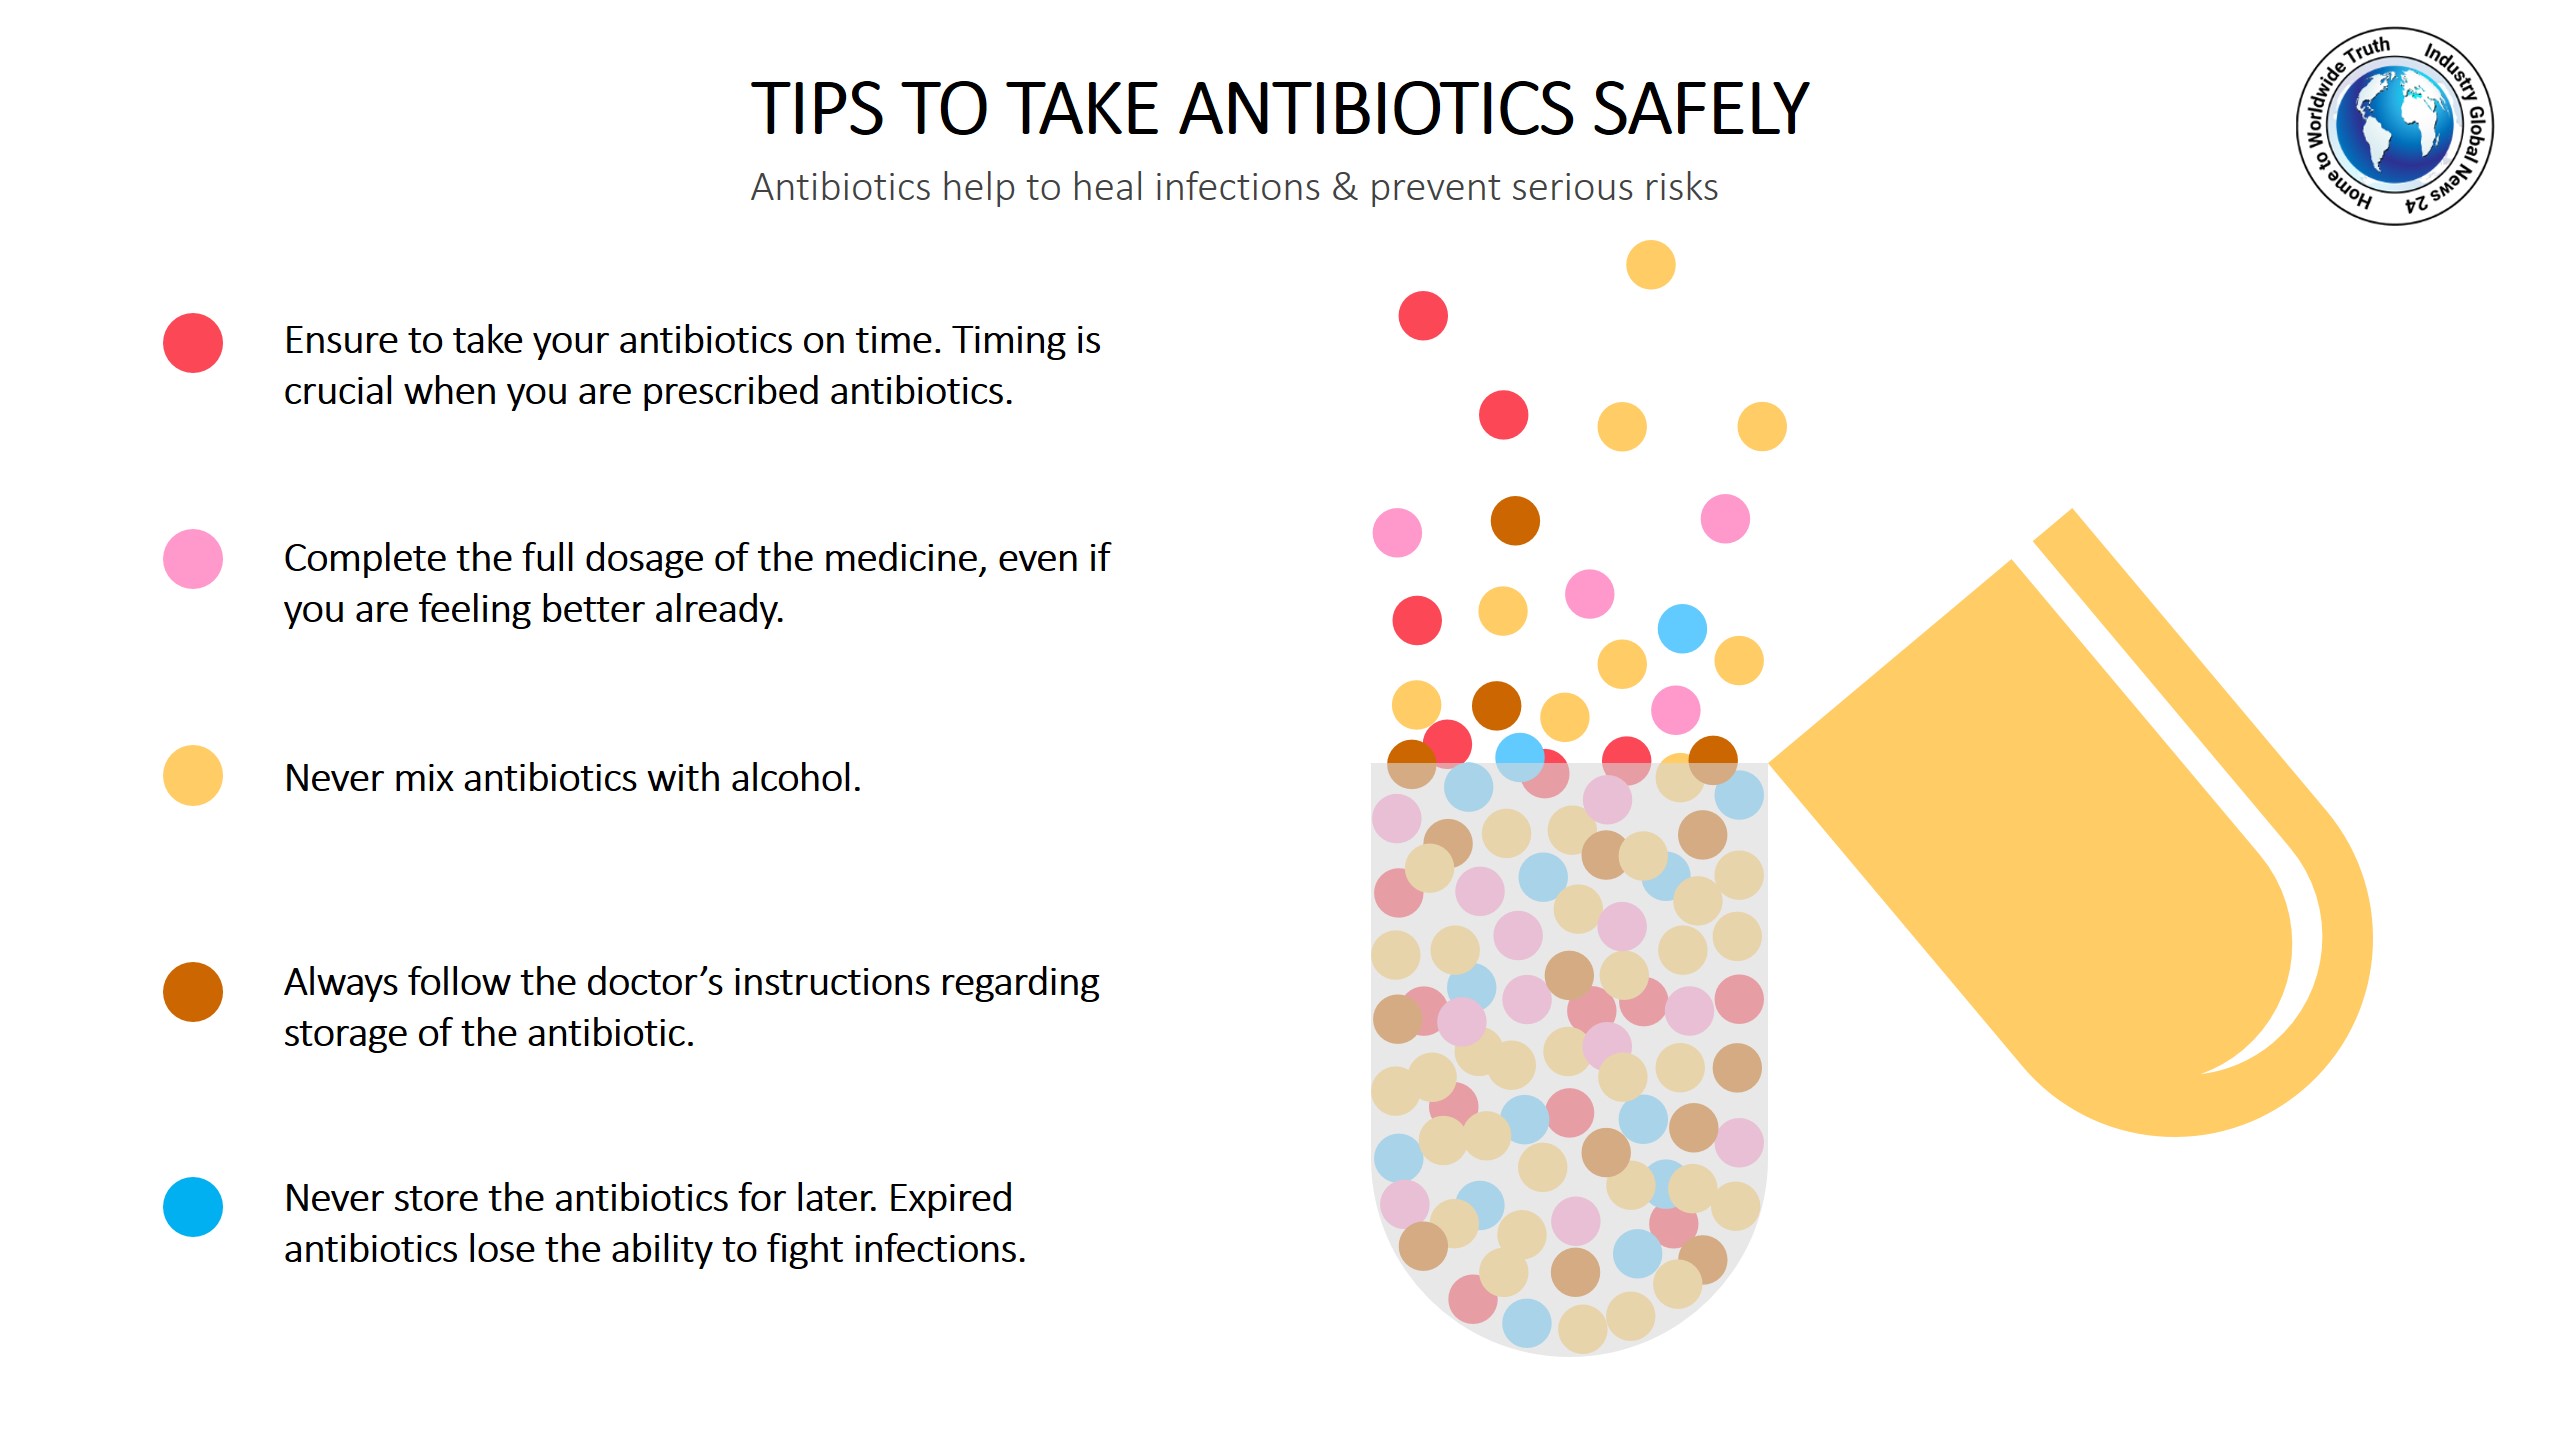 Tips to take antibiotics safely